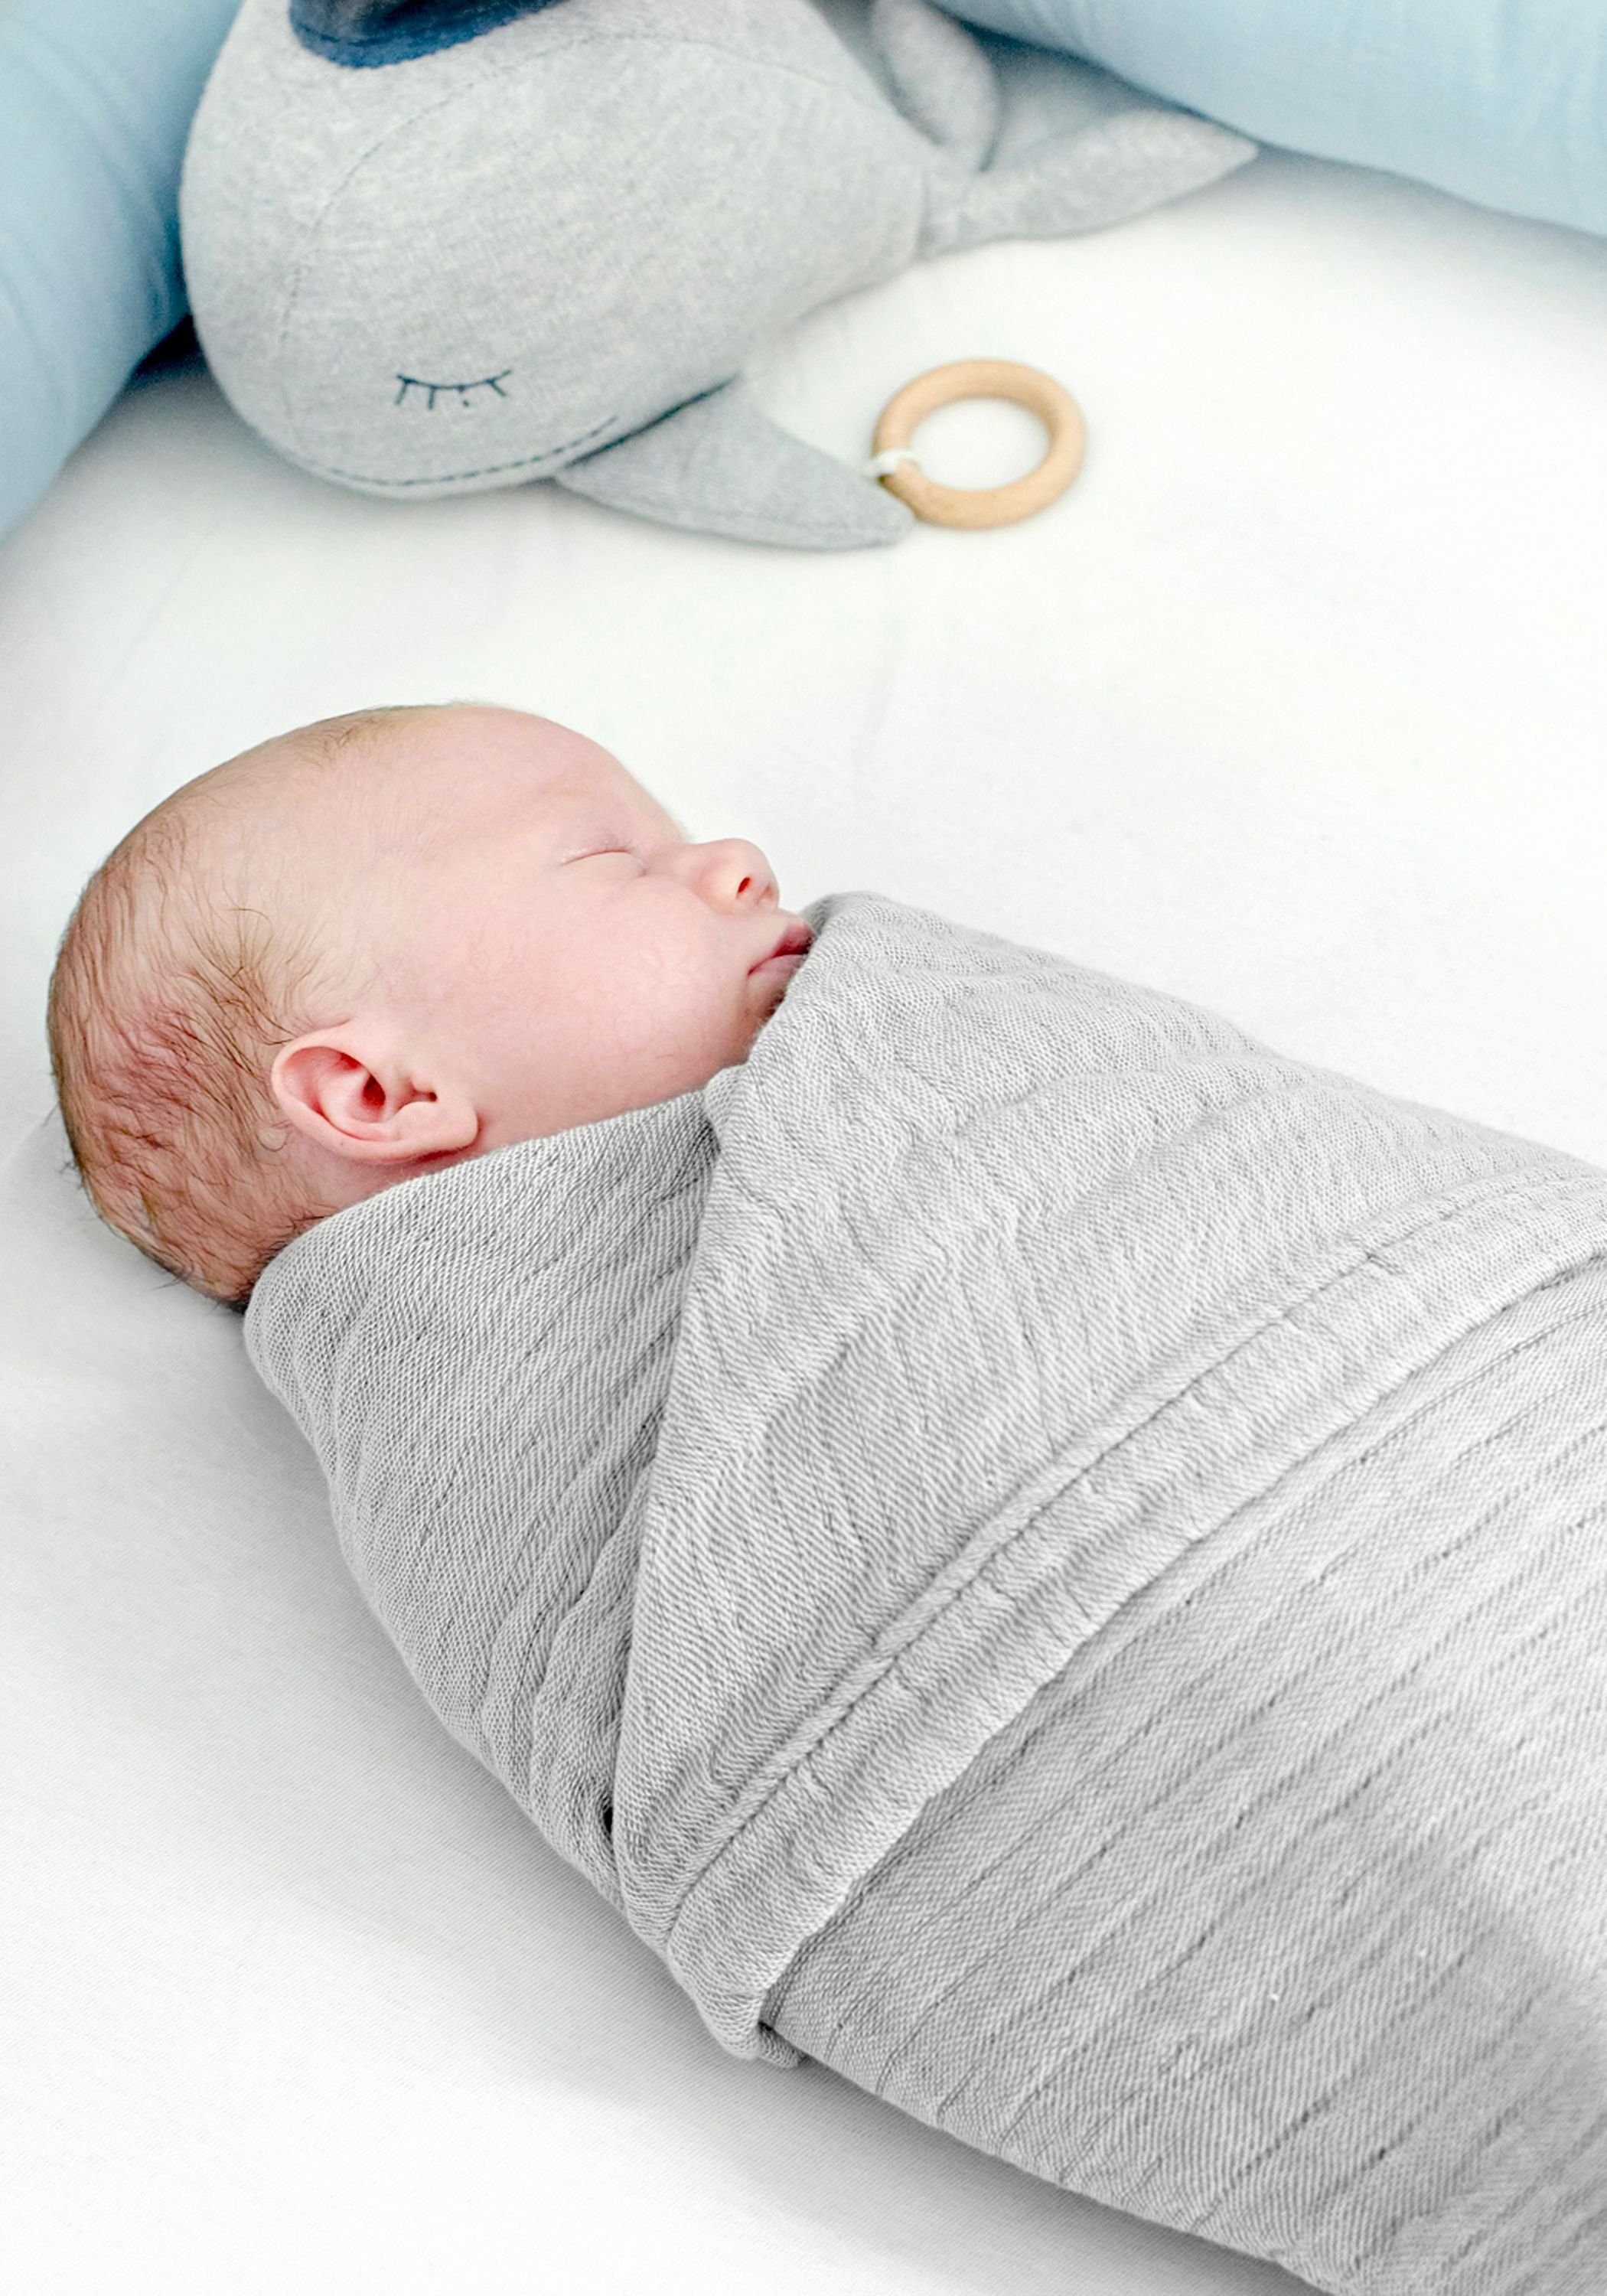 Babydecke, Nordic Pucktuch Hochwertige Mulltuch Company, 100% Coast Grau Musselin Baumwolle 4 Qualität Krabbeldecke Spucktuch Decke in 1 Premium Large Babydecke Baby